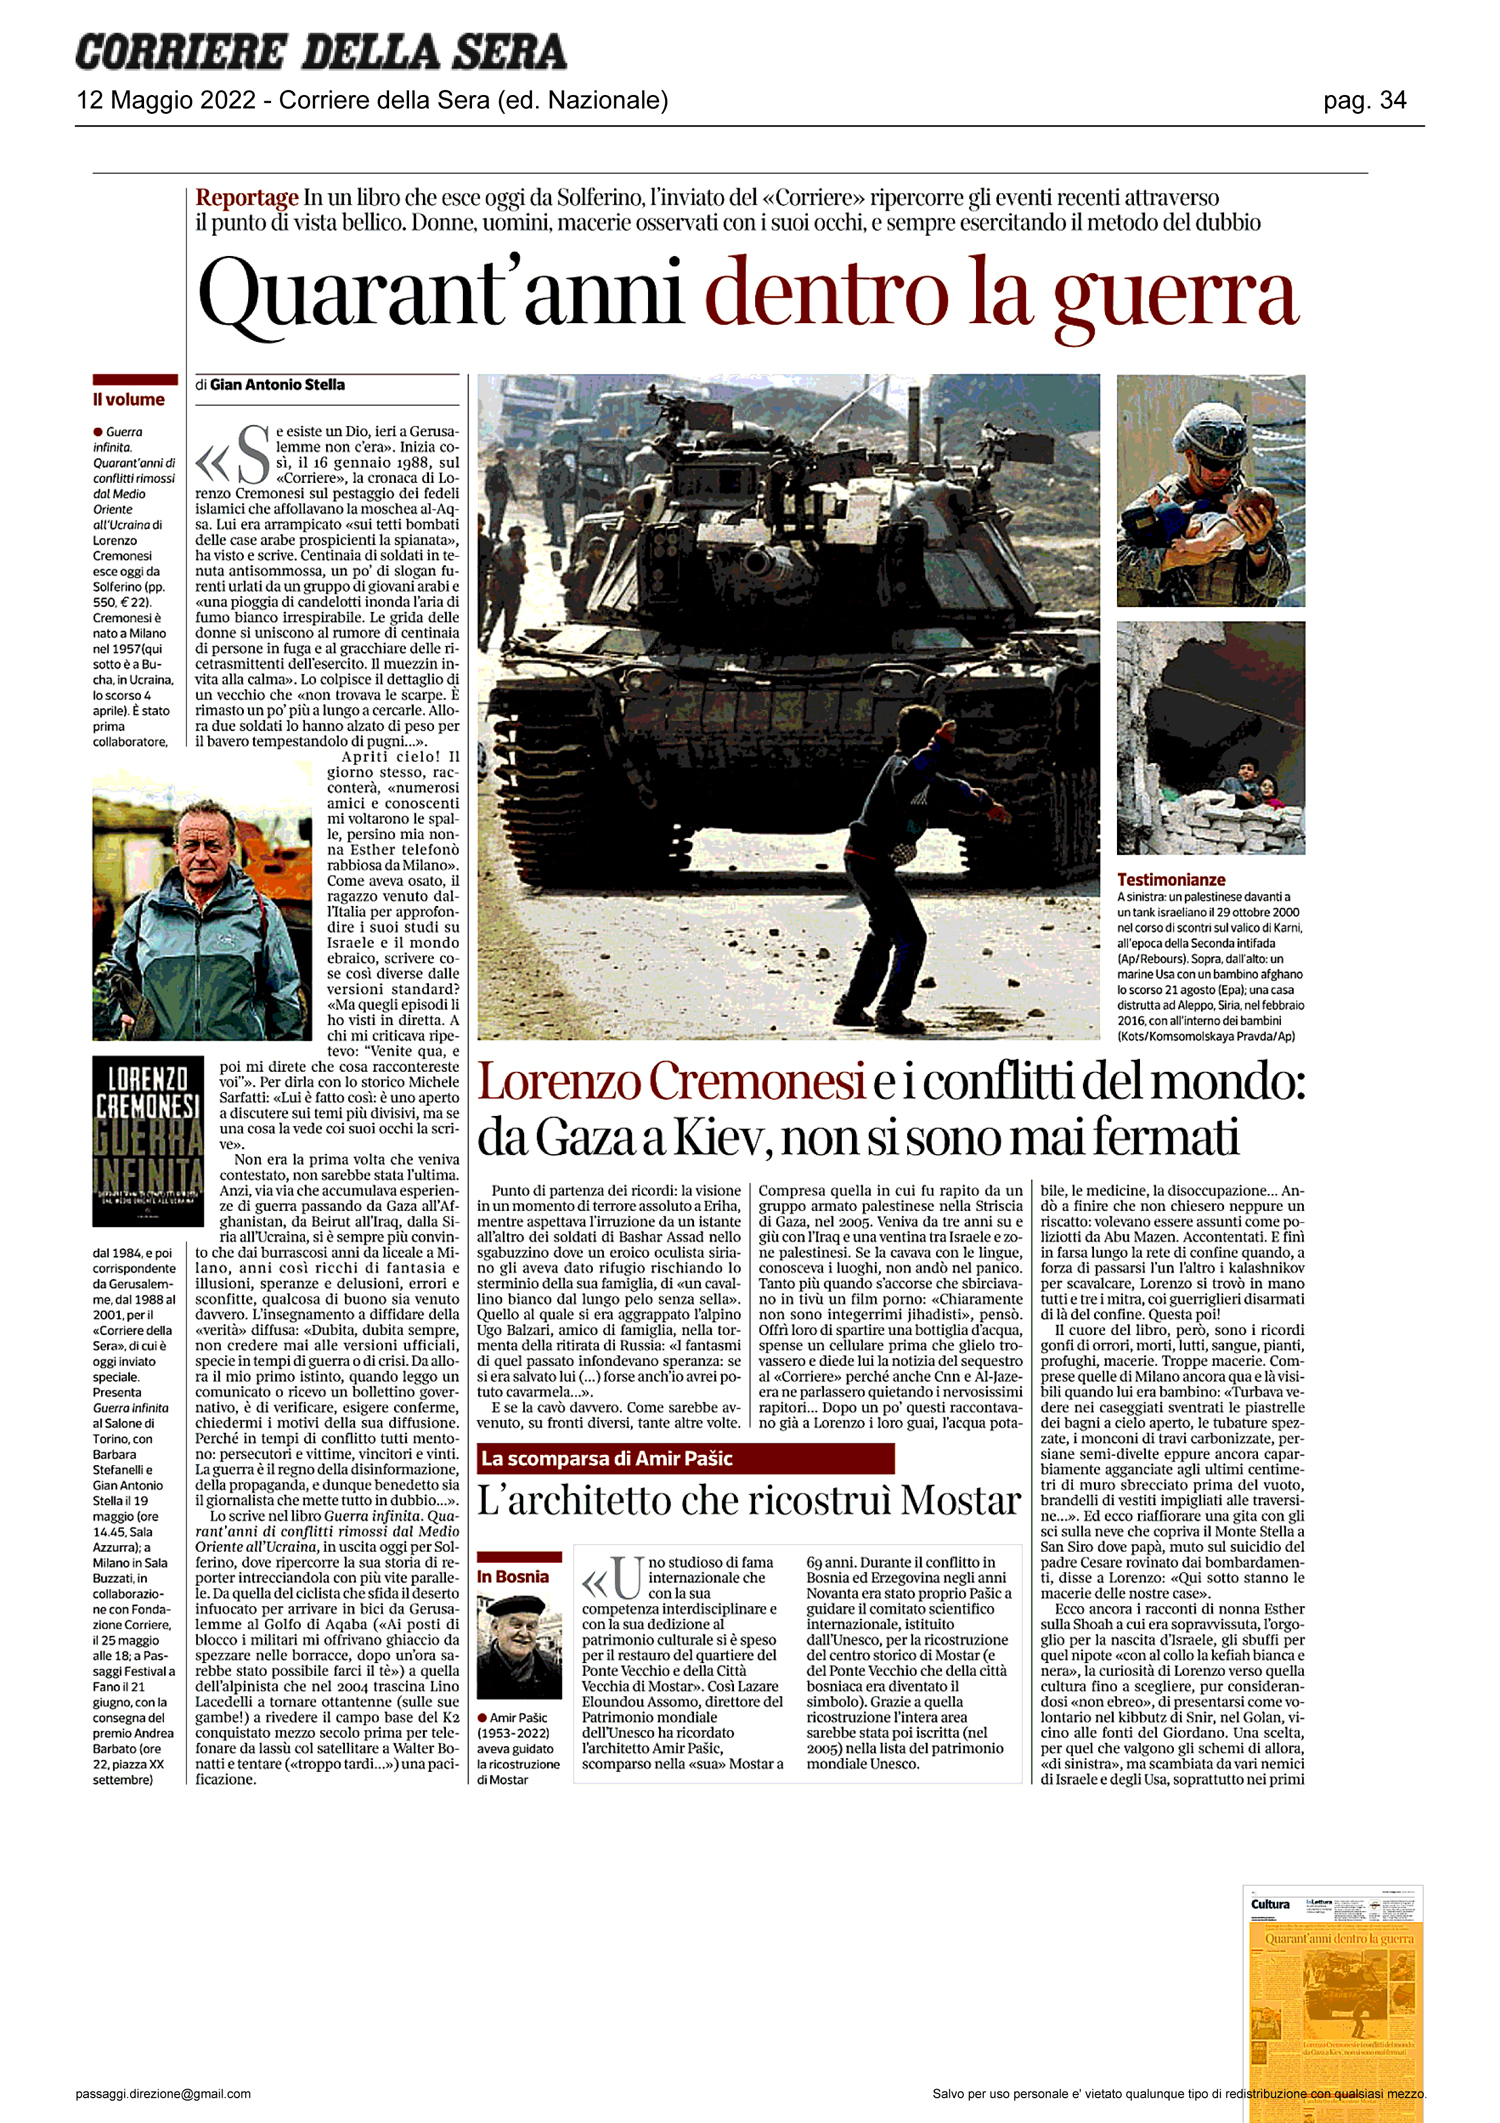 Corriere_della_Sera-quarantanni-dentro-la-guerra